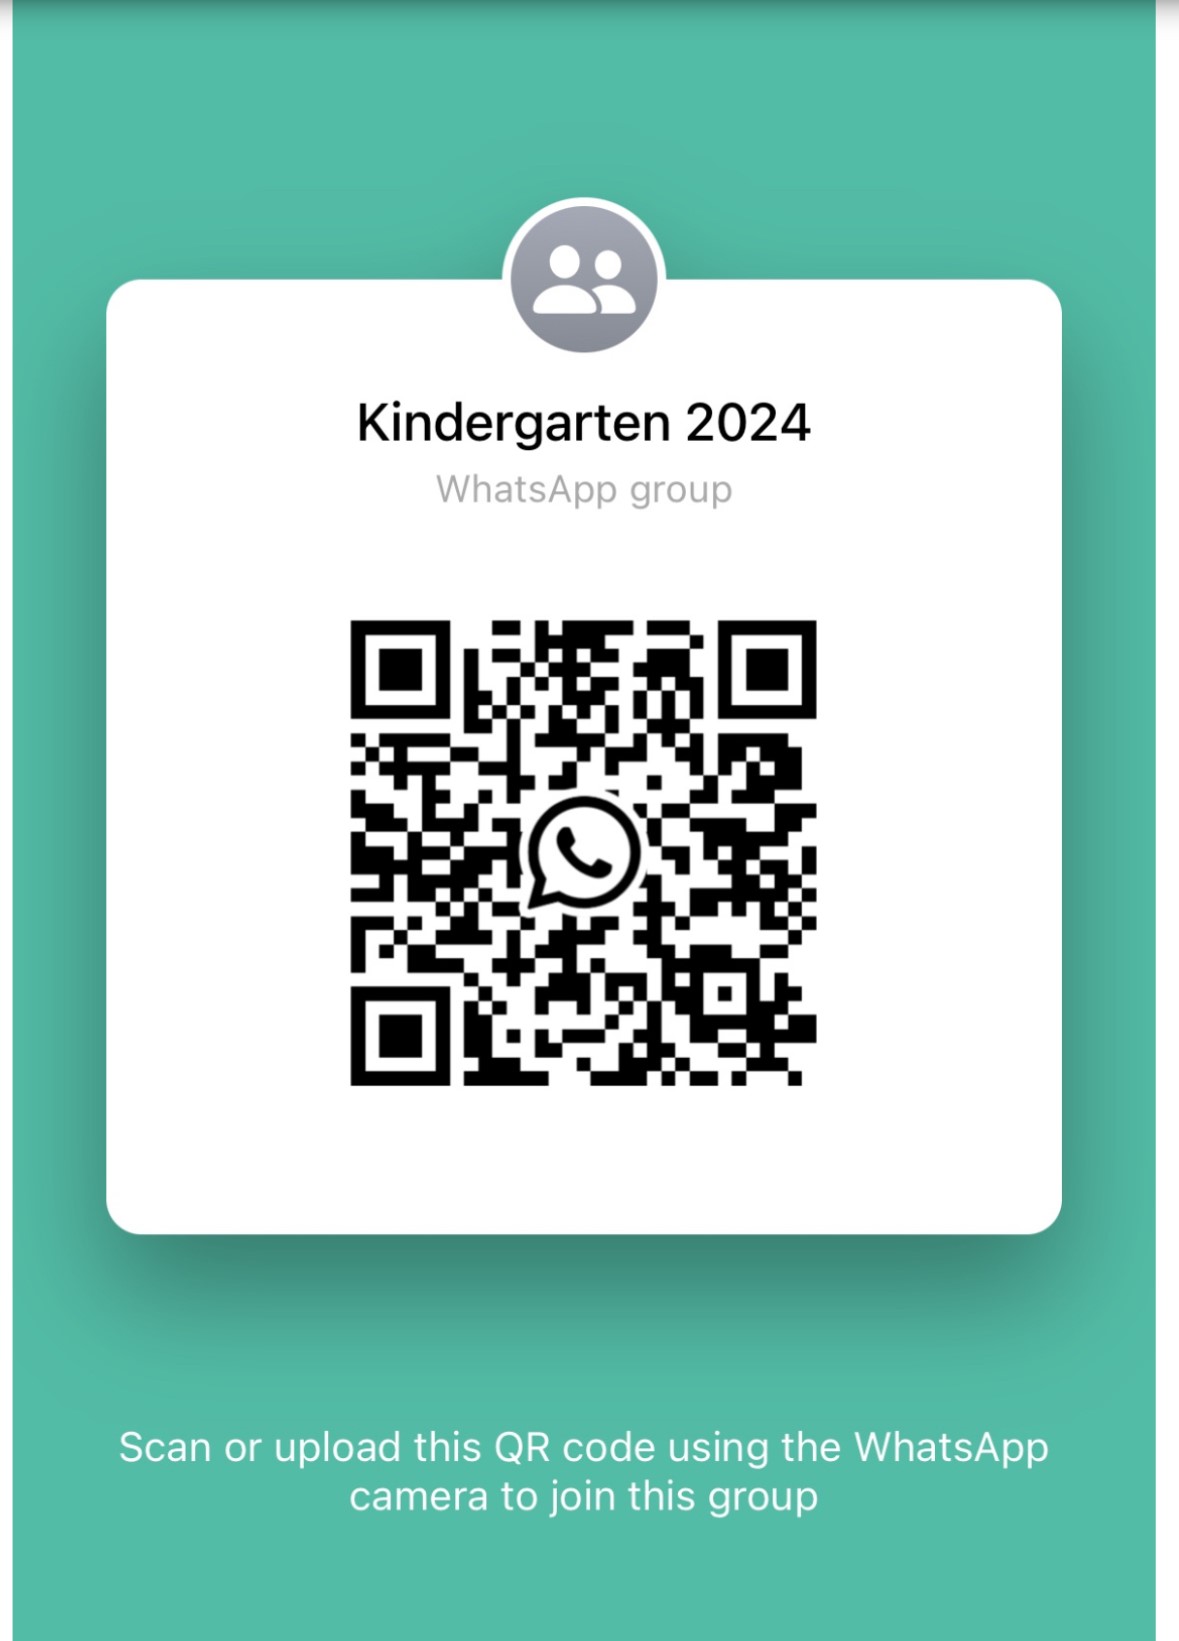 Kindergarten 2024 Group